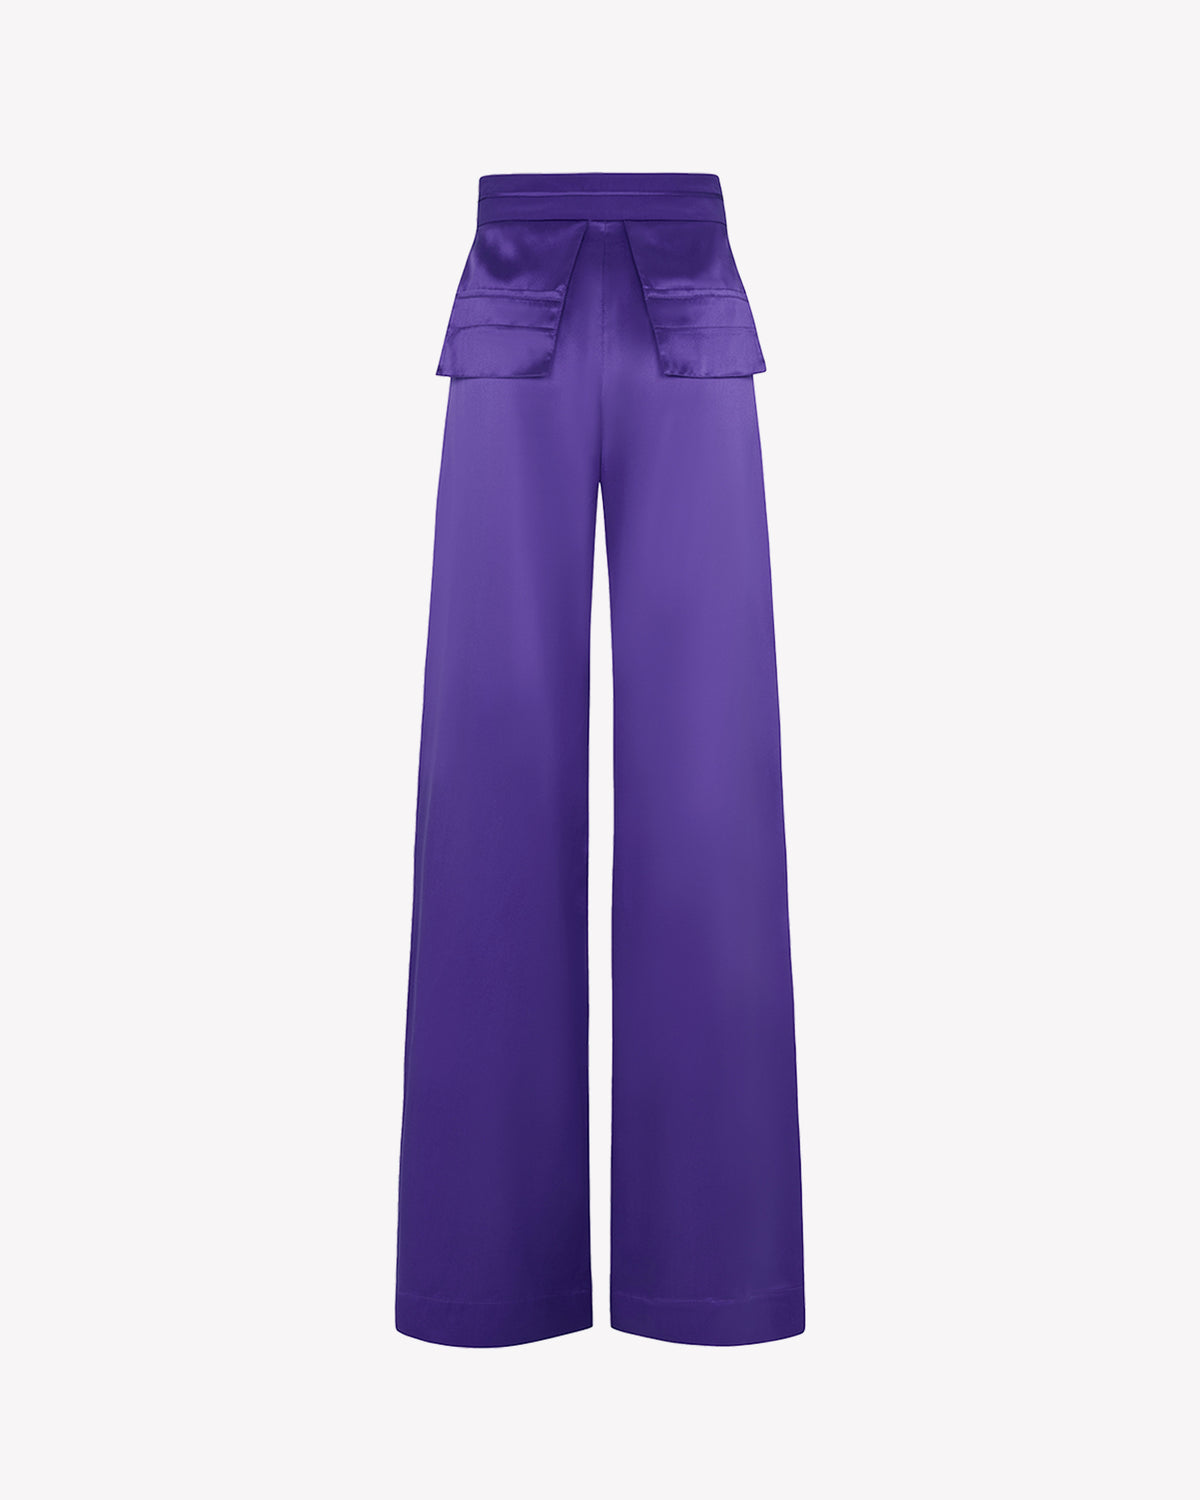 Silk Inside Out Trouser - Amethyst Purple